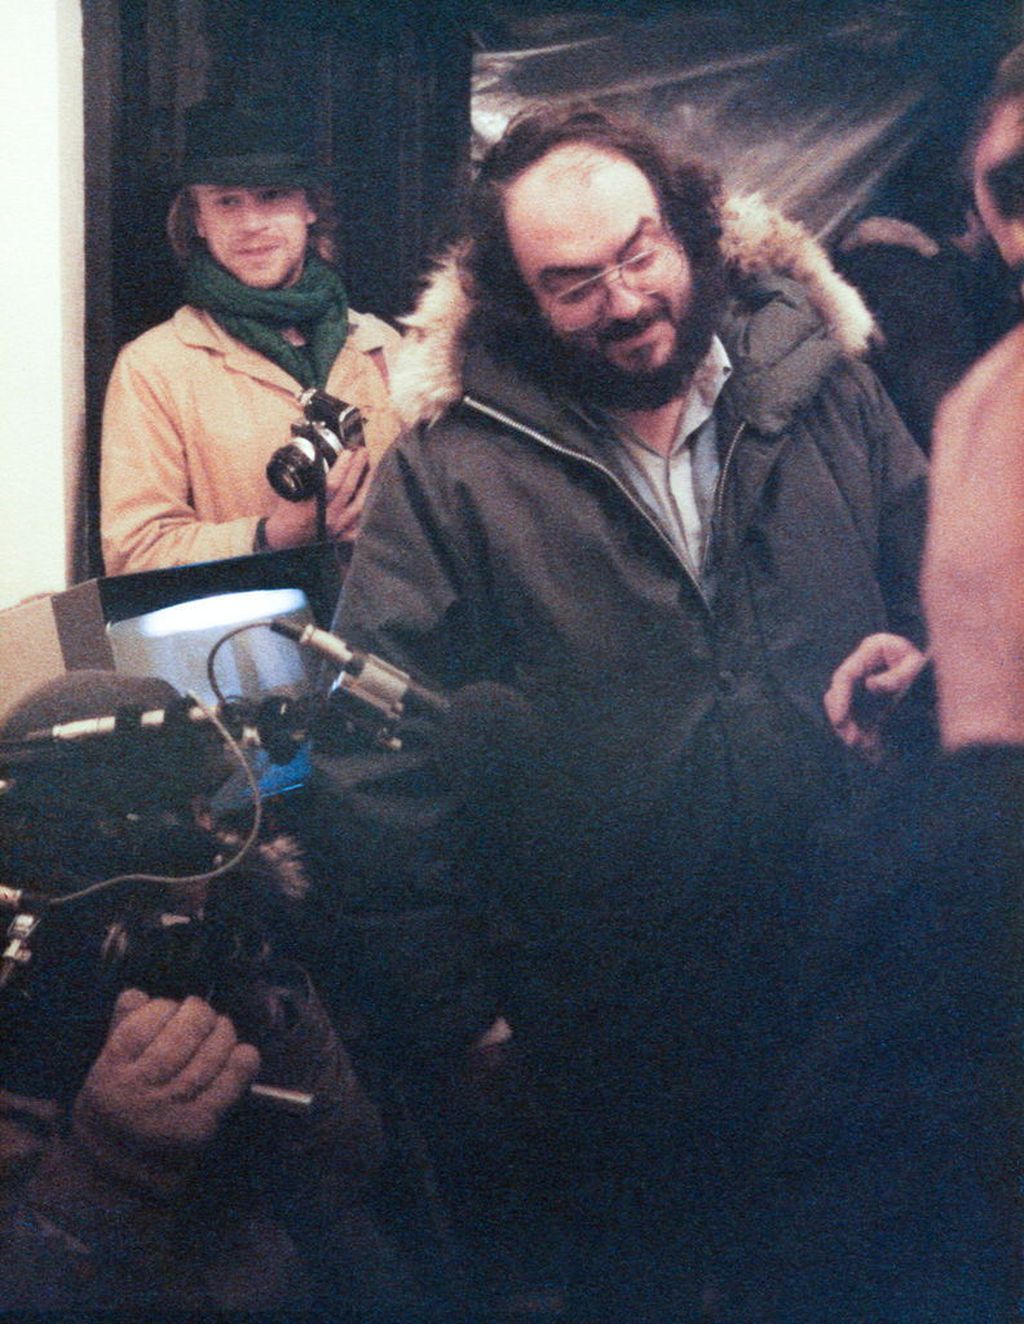 Ainekset suurteokseen löytyivät 60 vuoden jälkeen - uusi Kubrick-elokuva mahdollinen 19 vuotta huippuohjaajan kuoleman jälkeen